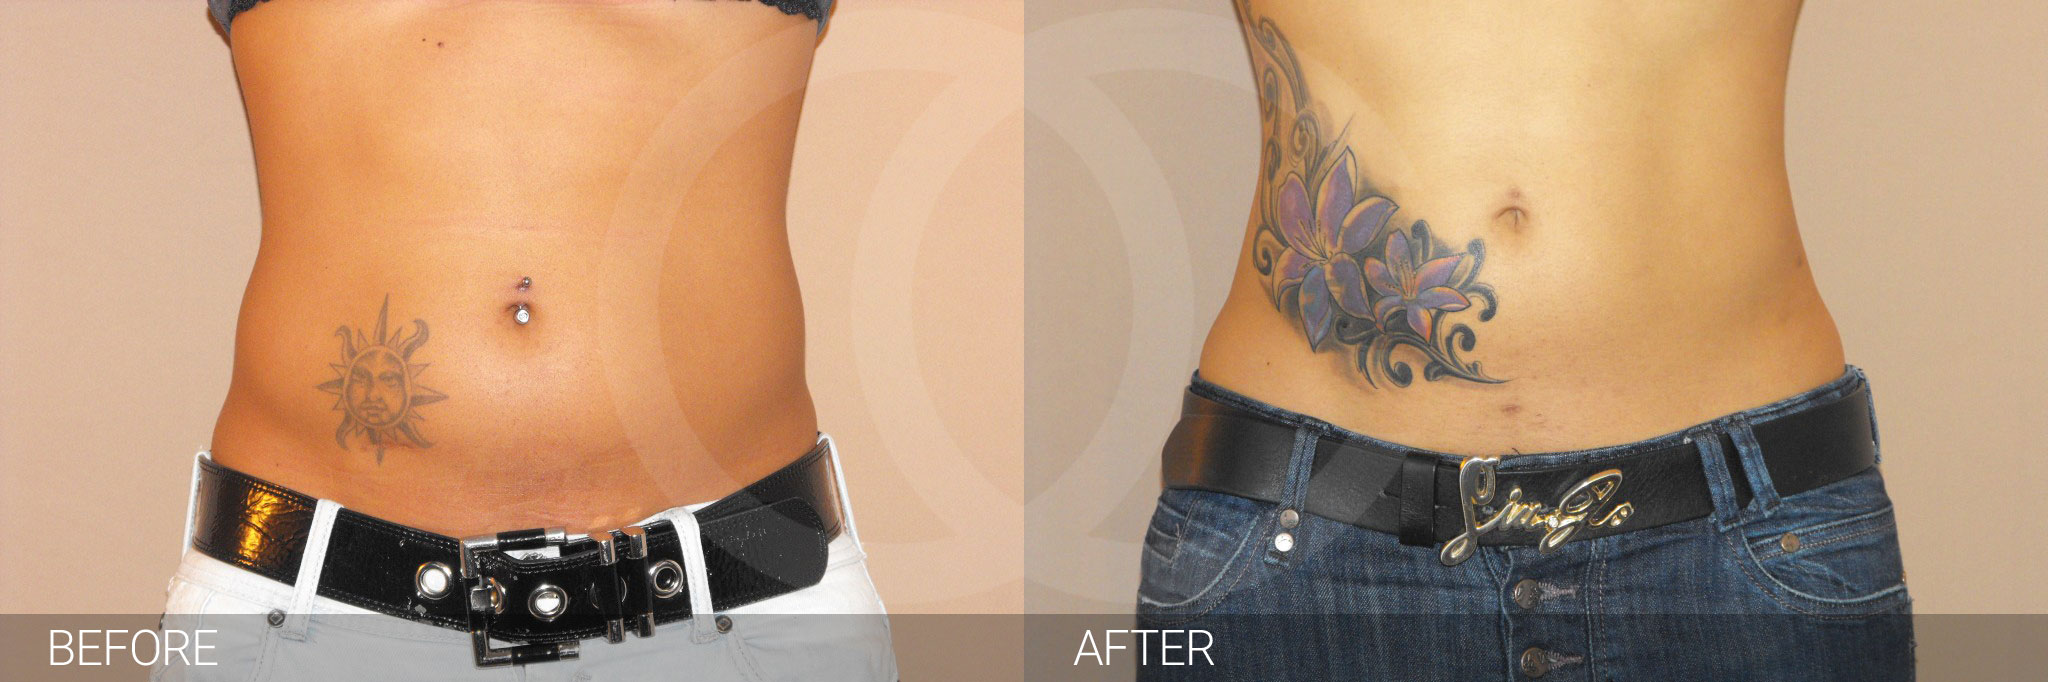 Antes y después Fotos de eliminar grasa abdominal fotos reales de pacientes 2.1 | Ocean Clinic Marbella Madrid